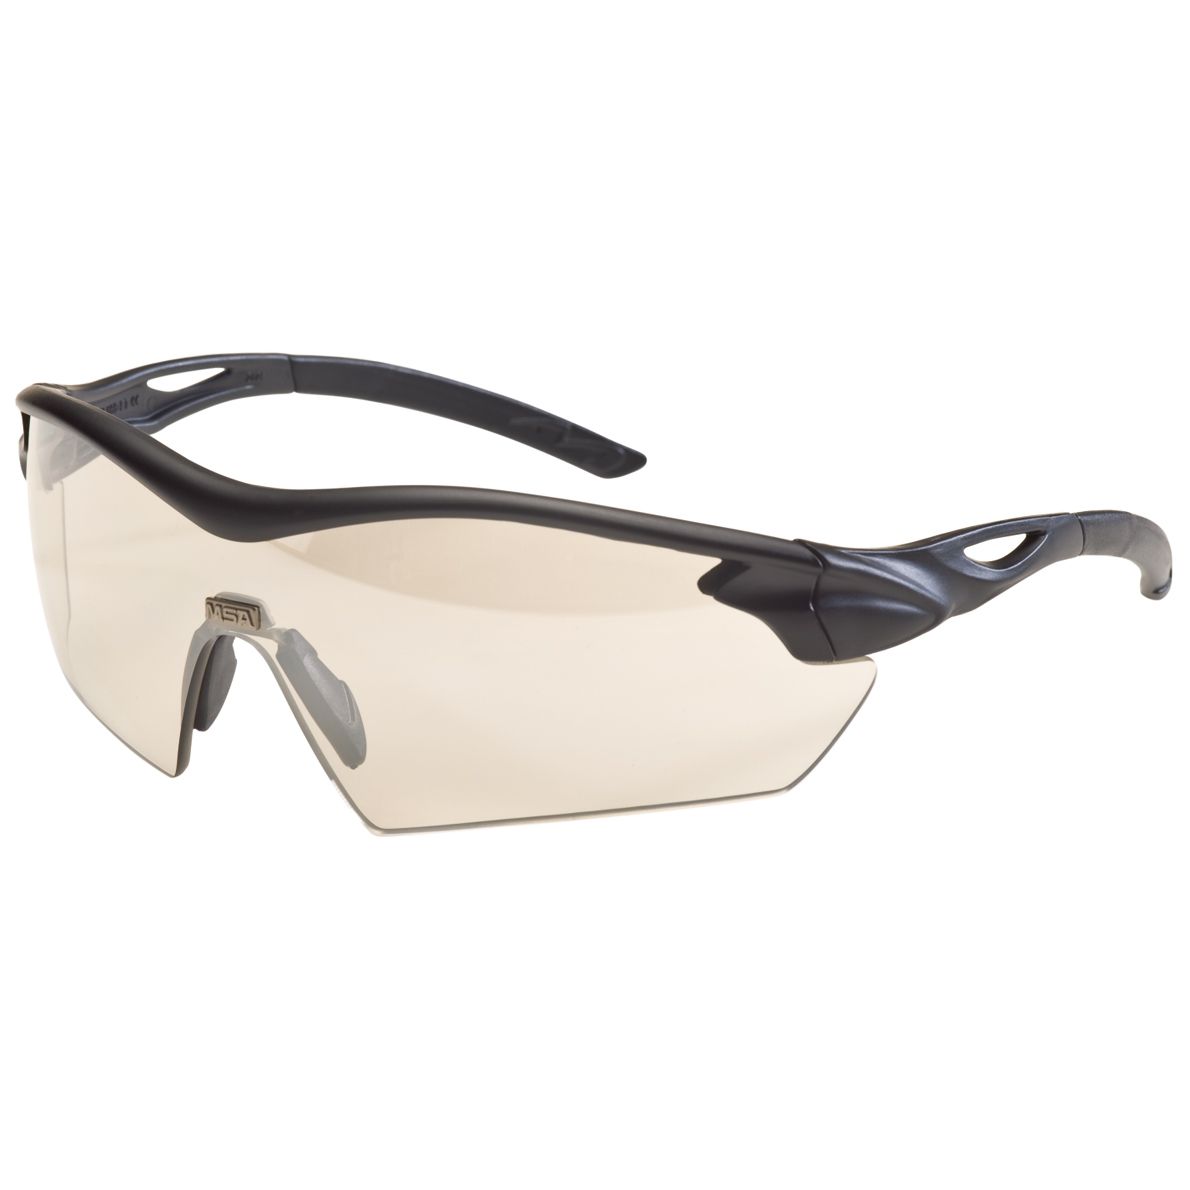 MSA Racer Arbeits- & Militär-Schutzbrille - EN 166 & MIL-V-43511C - Schießbrille + Brillenbeutel - Schwarz/Goldspiegel